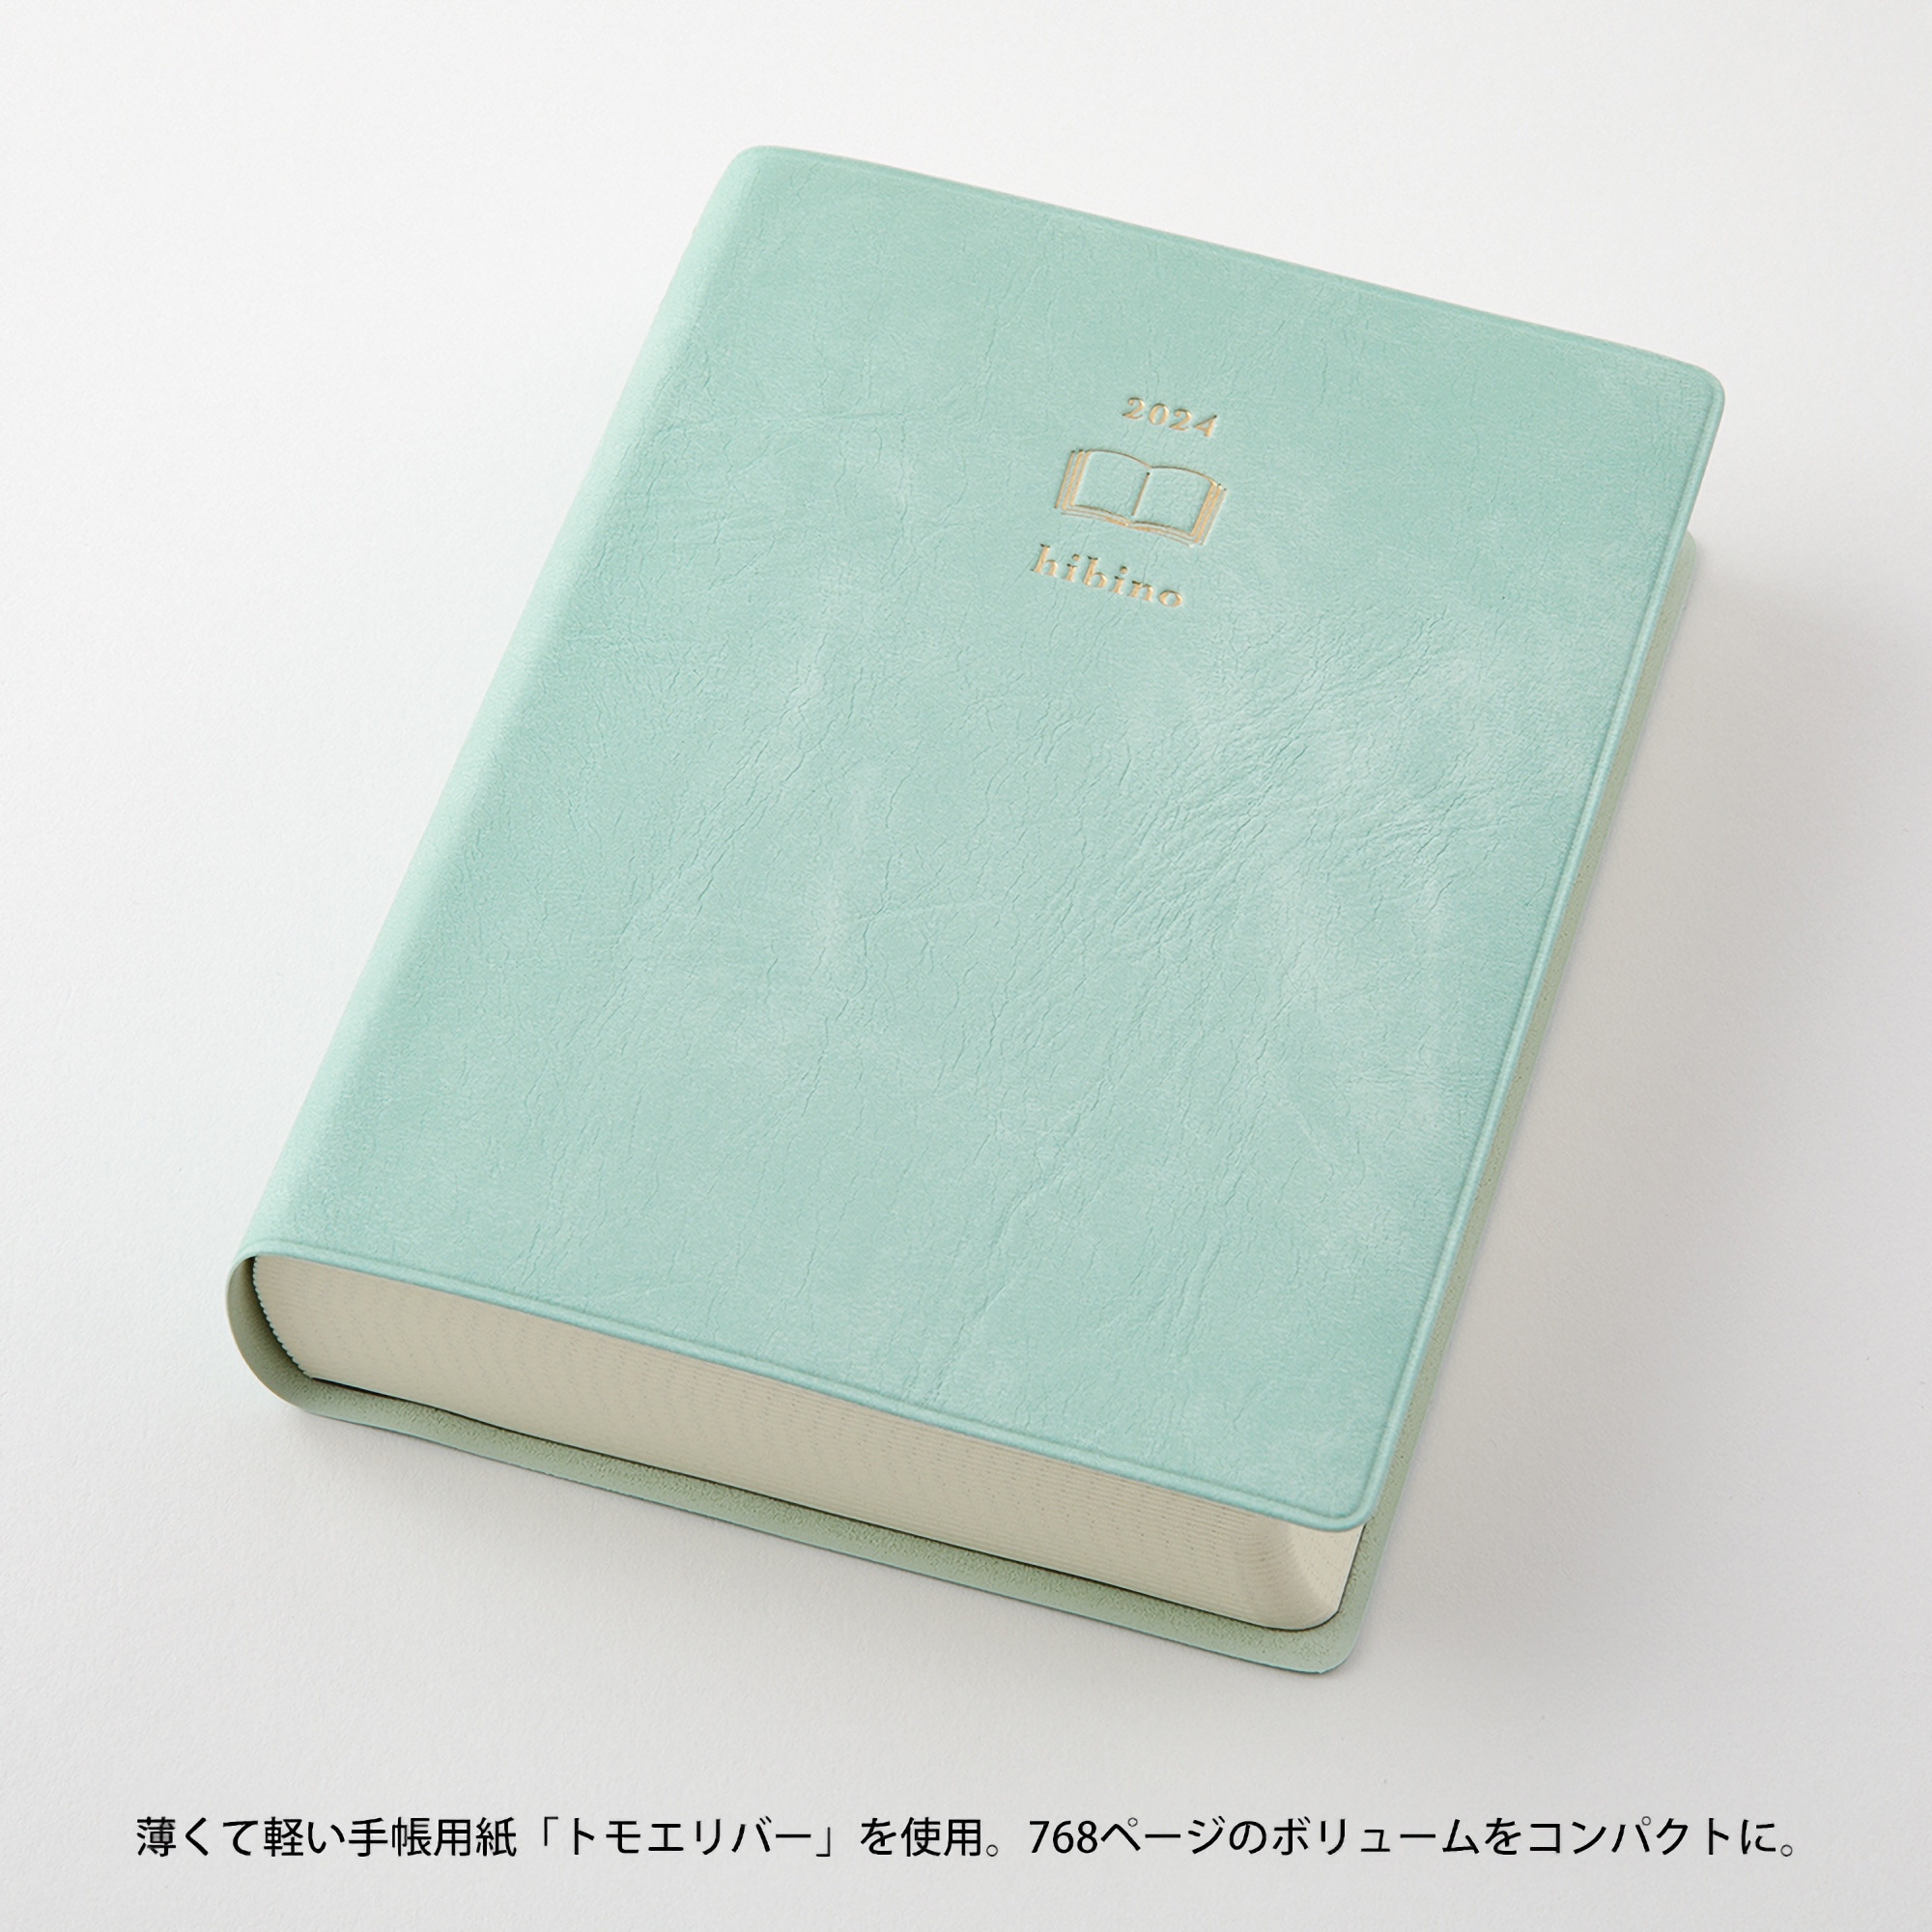 Midori 2024 Diary Hibino A6 Blue Green